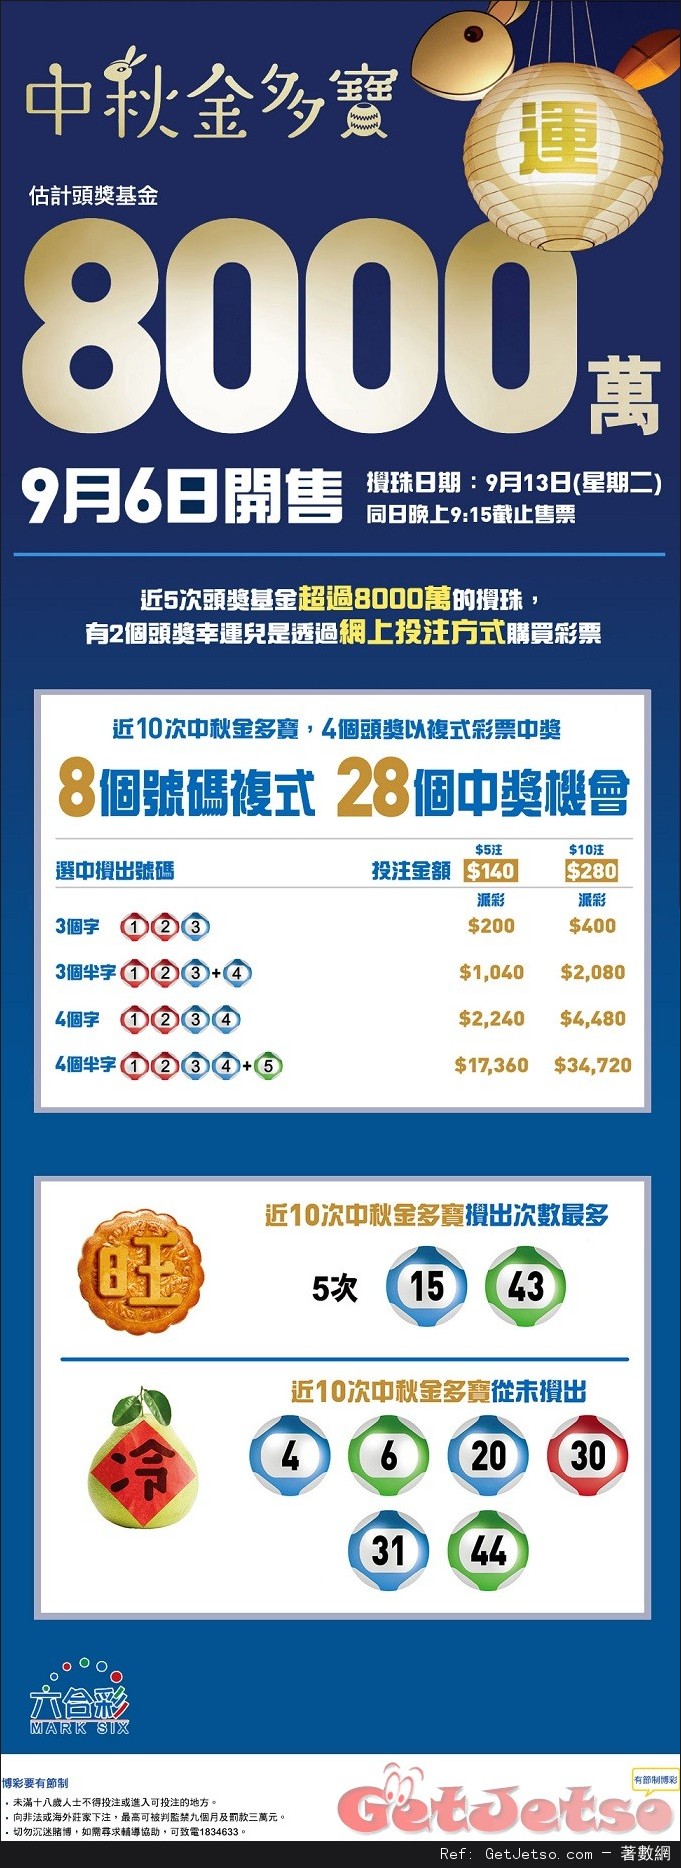 六合彩中秋金多寶頭獎獎金達8000萬(16年9月13日)圖片1